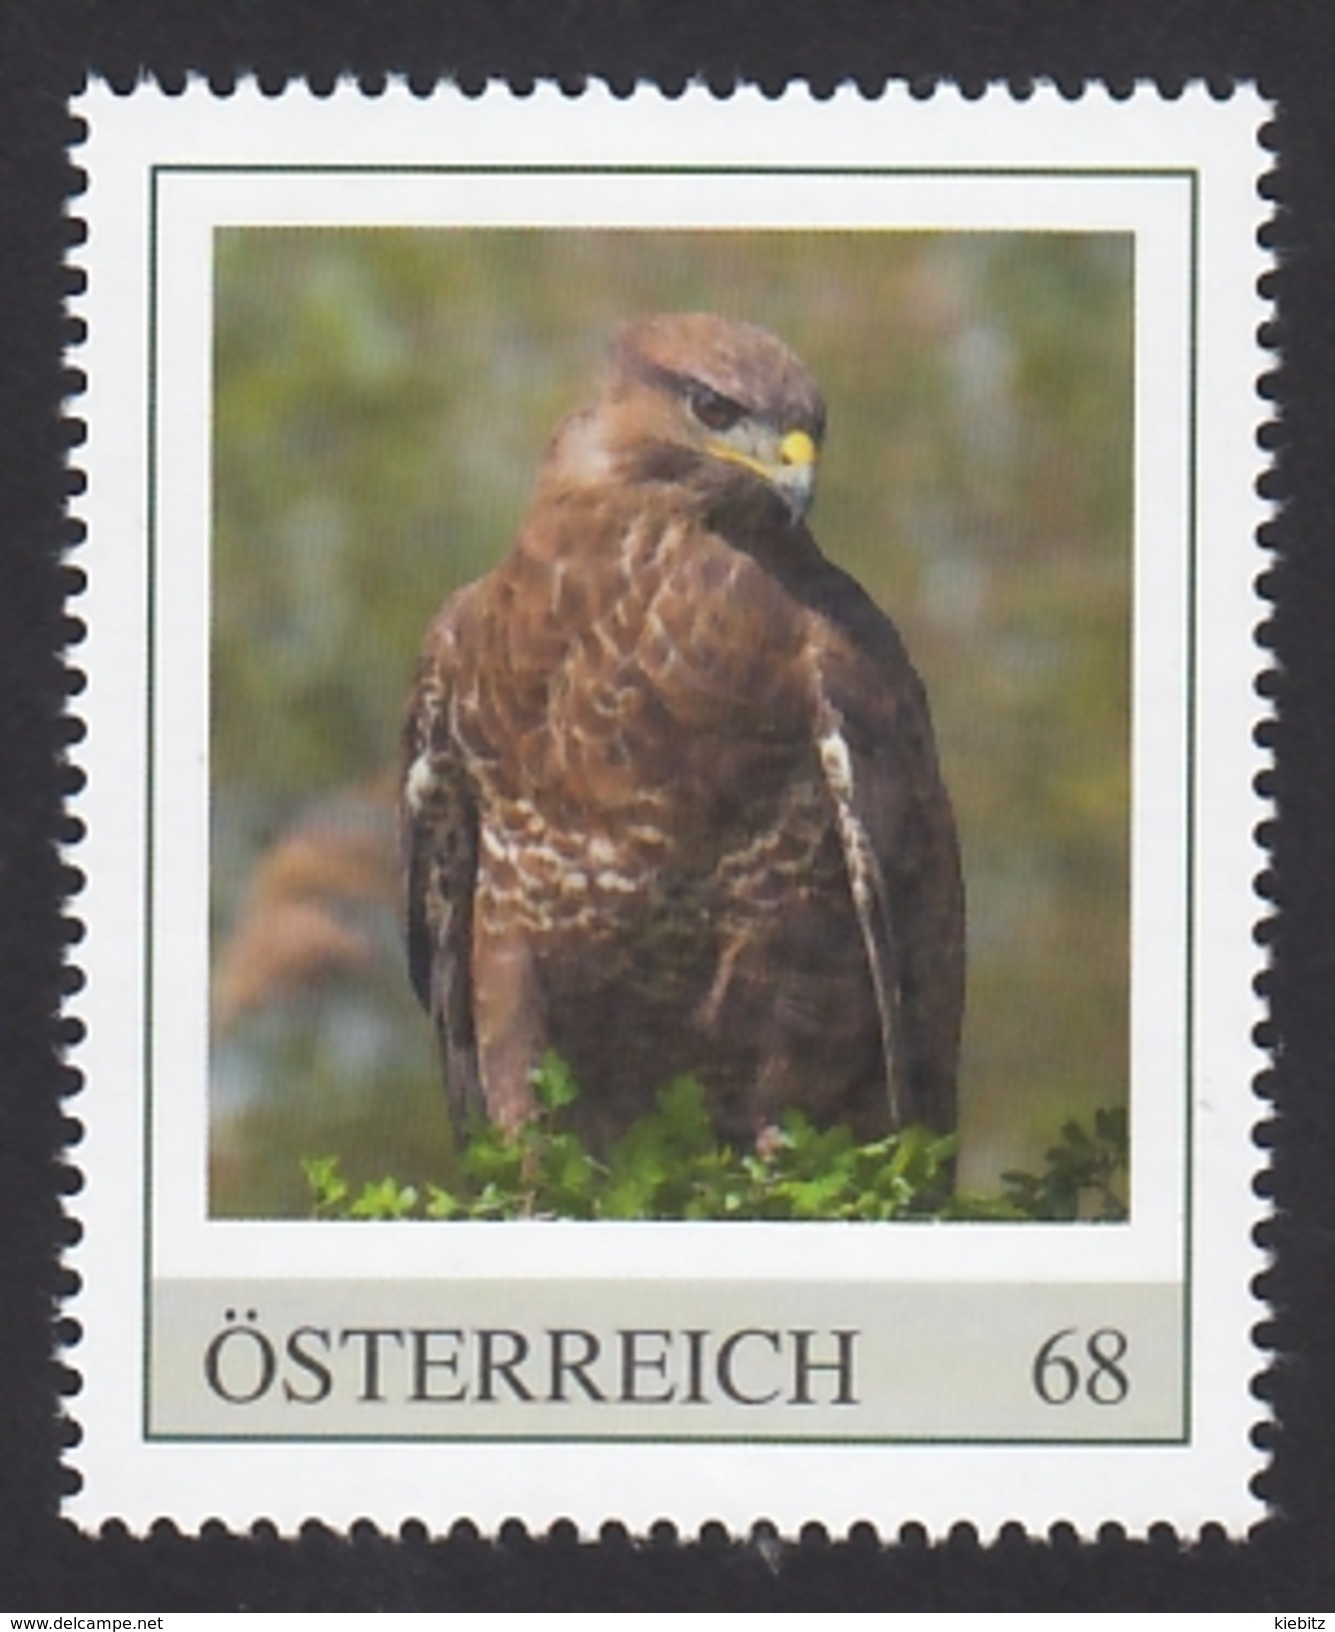 ÖSTERREICH 2015 ** Mäusebussard / Buteo Buteo - PM Personalized Stamp MNH - Adler & Greifvögel